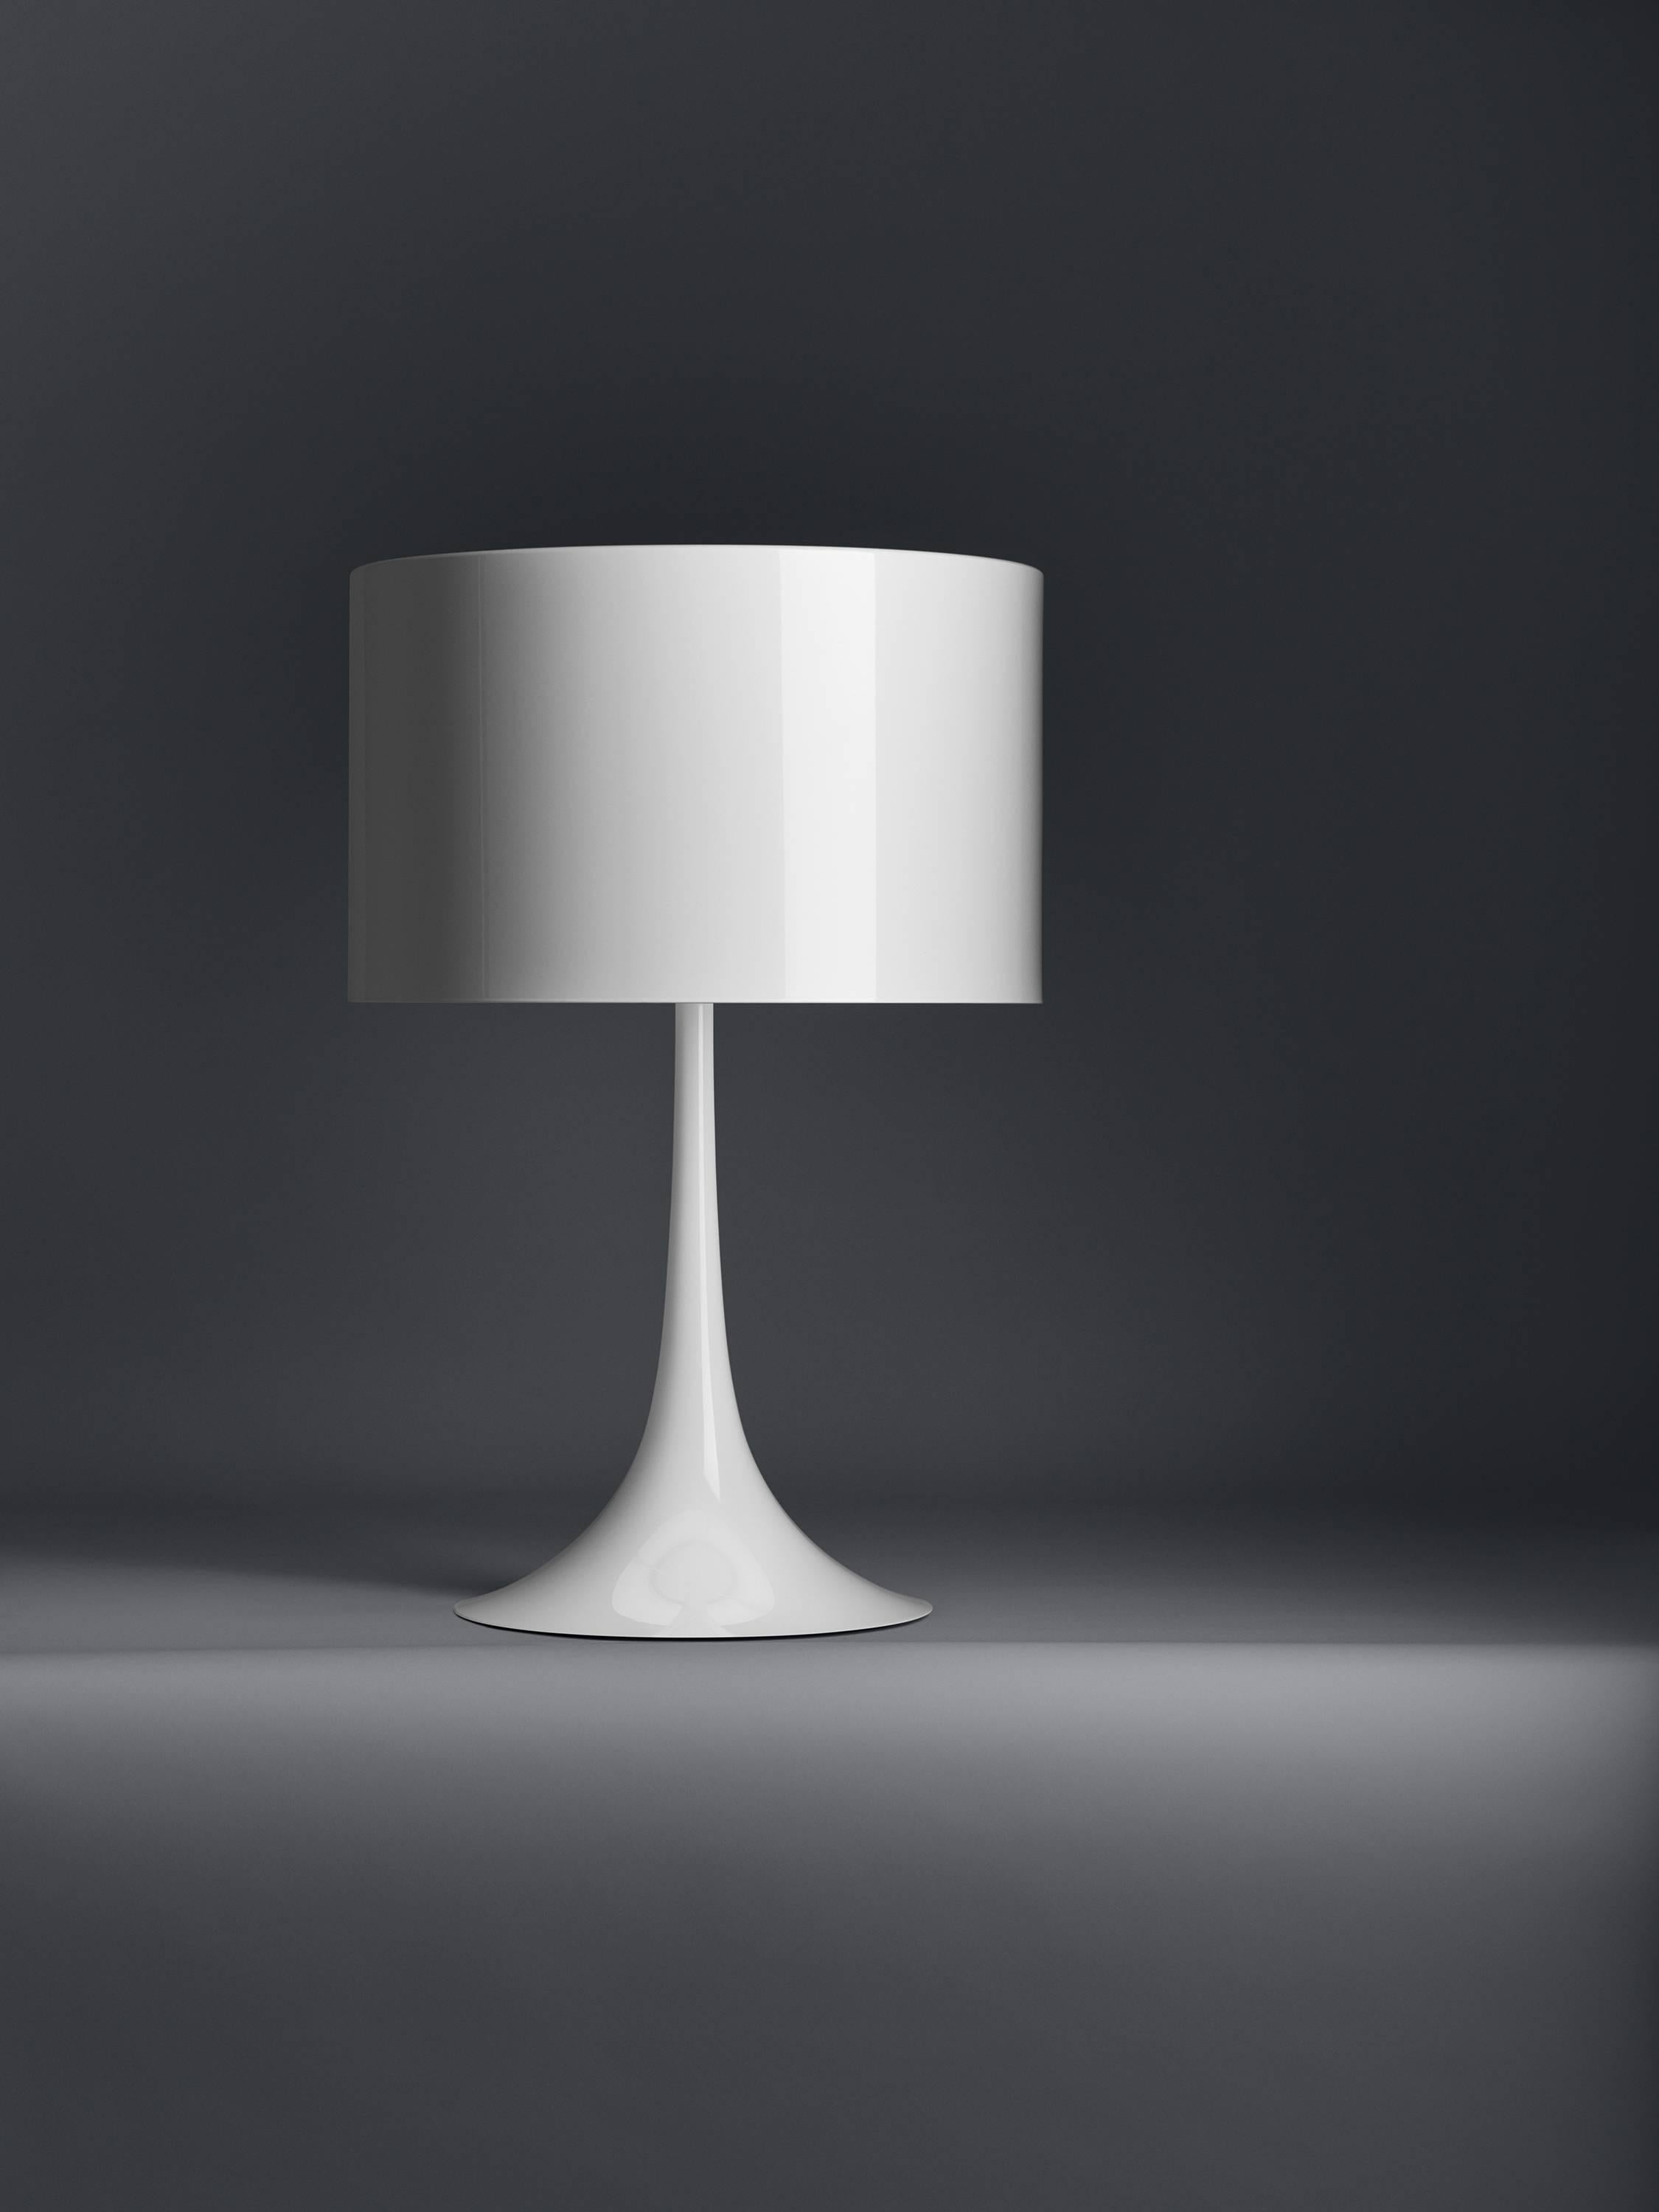 Conçue par Sebastian Wrong en 2003, la lampe de table Spun Light-T reflète le meilleur de la technologie de fabrication moderne associée à l'élégance, au savoir-faire et à une esthétique fluide et dynamique.

Son corps principal comporte un cadre et